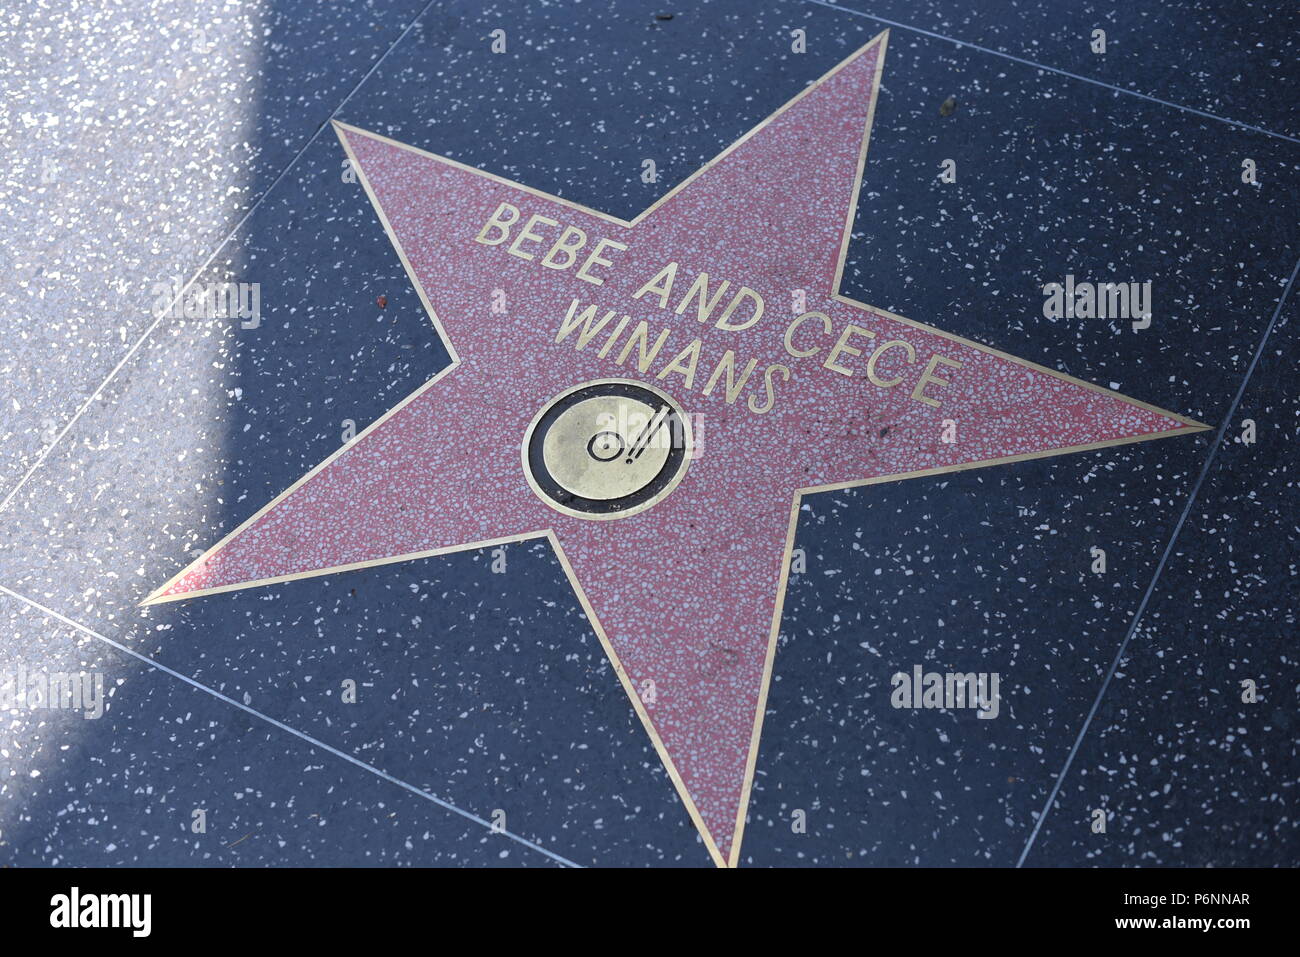 HOLLYWOOD, CA - 29 Giugno: Bebe e Cece Winans stella sulla Hollywood Walk of Fame in Hollywood, la California il 29 giugno 2018. Foto Stock